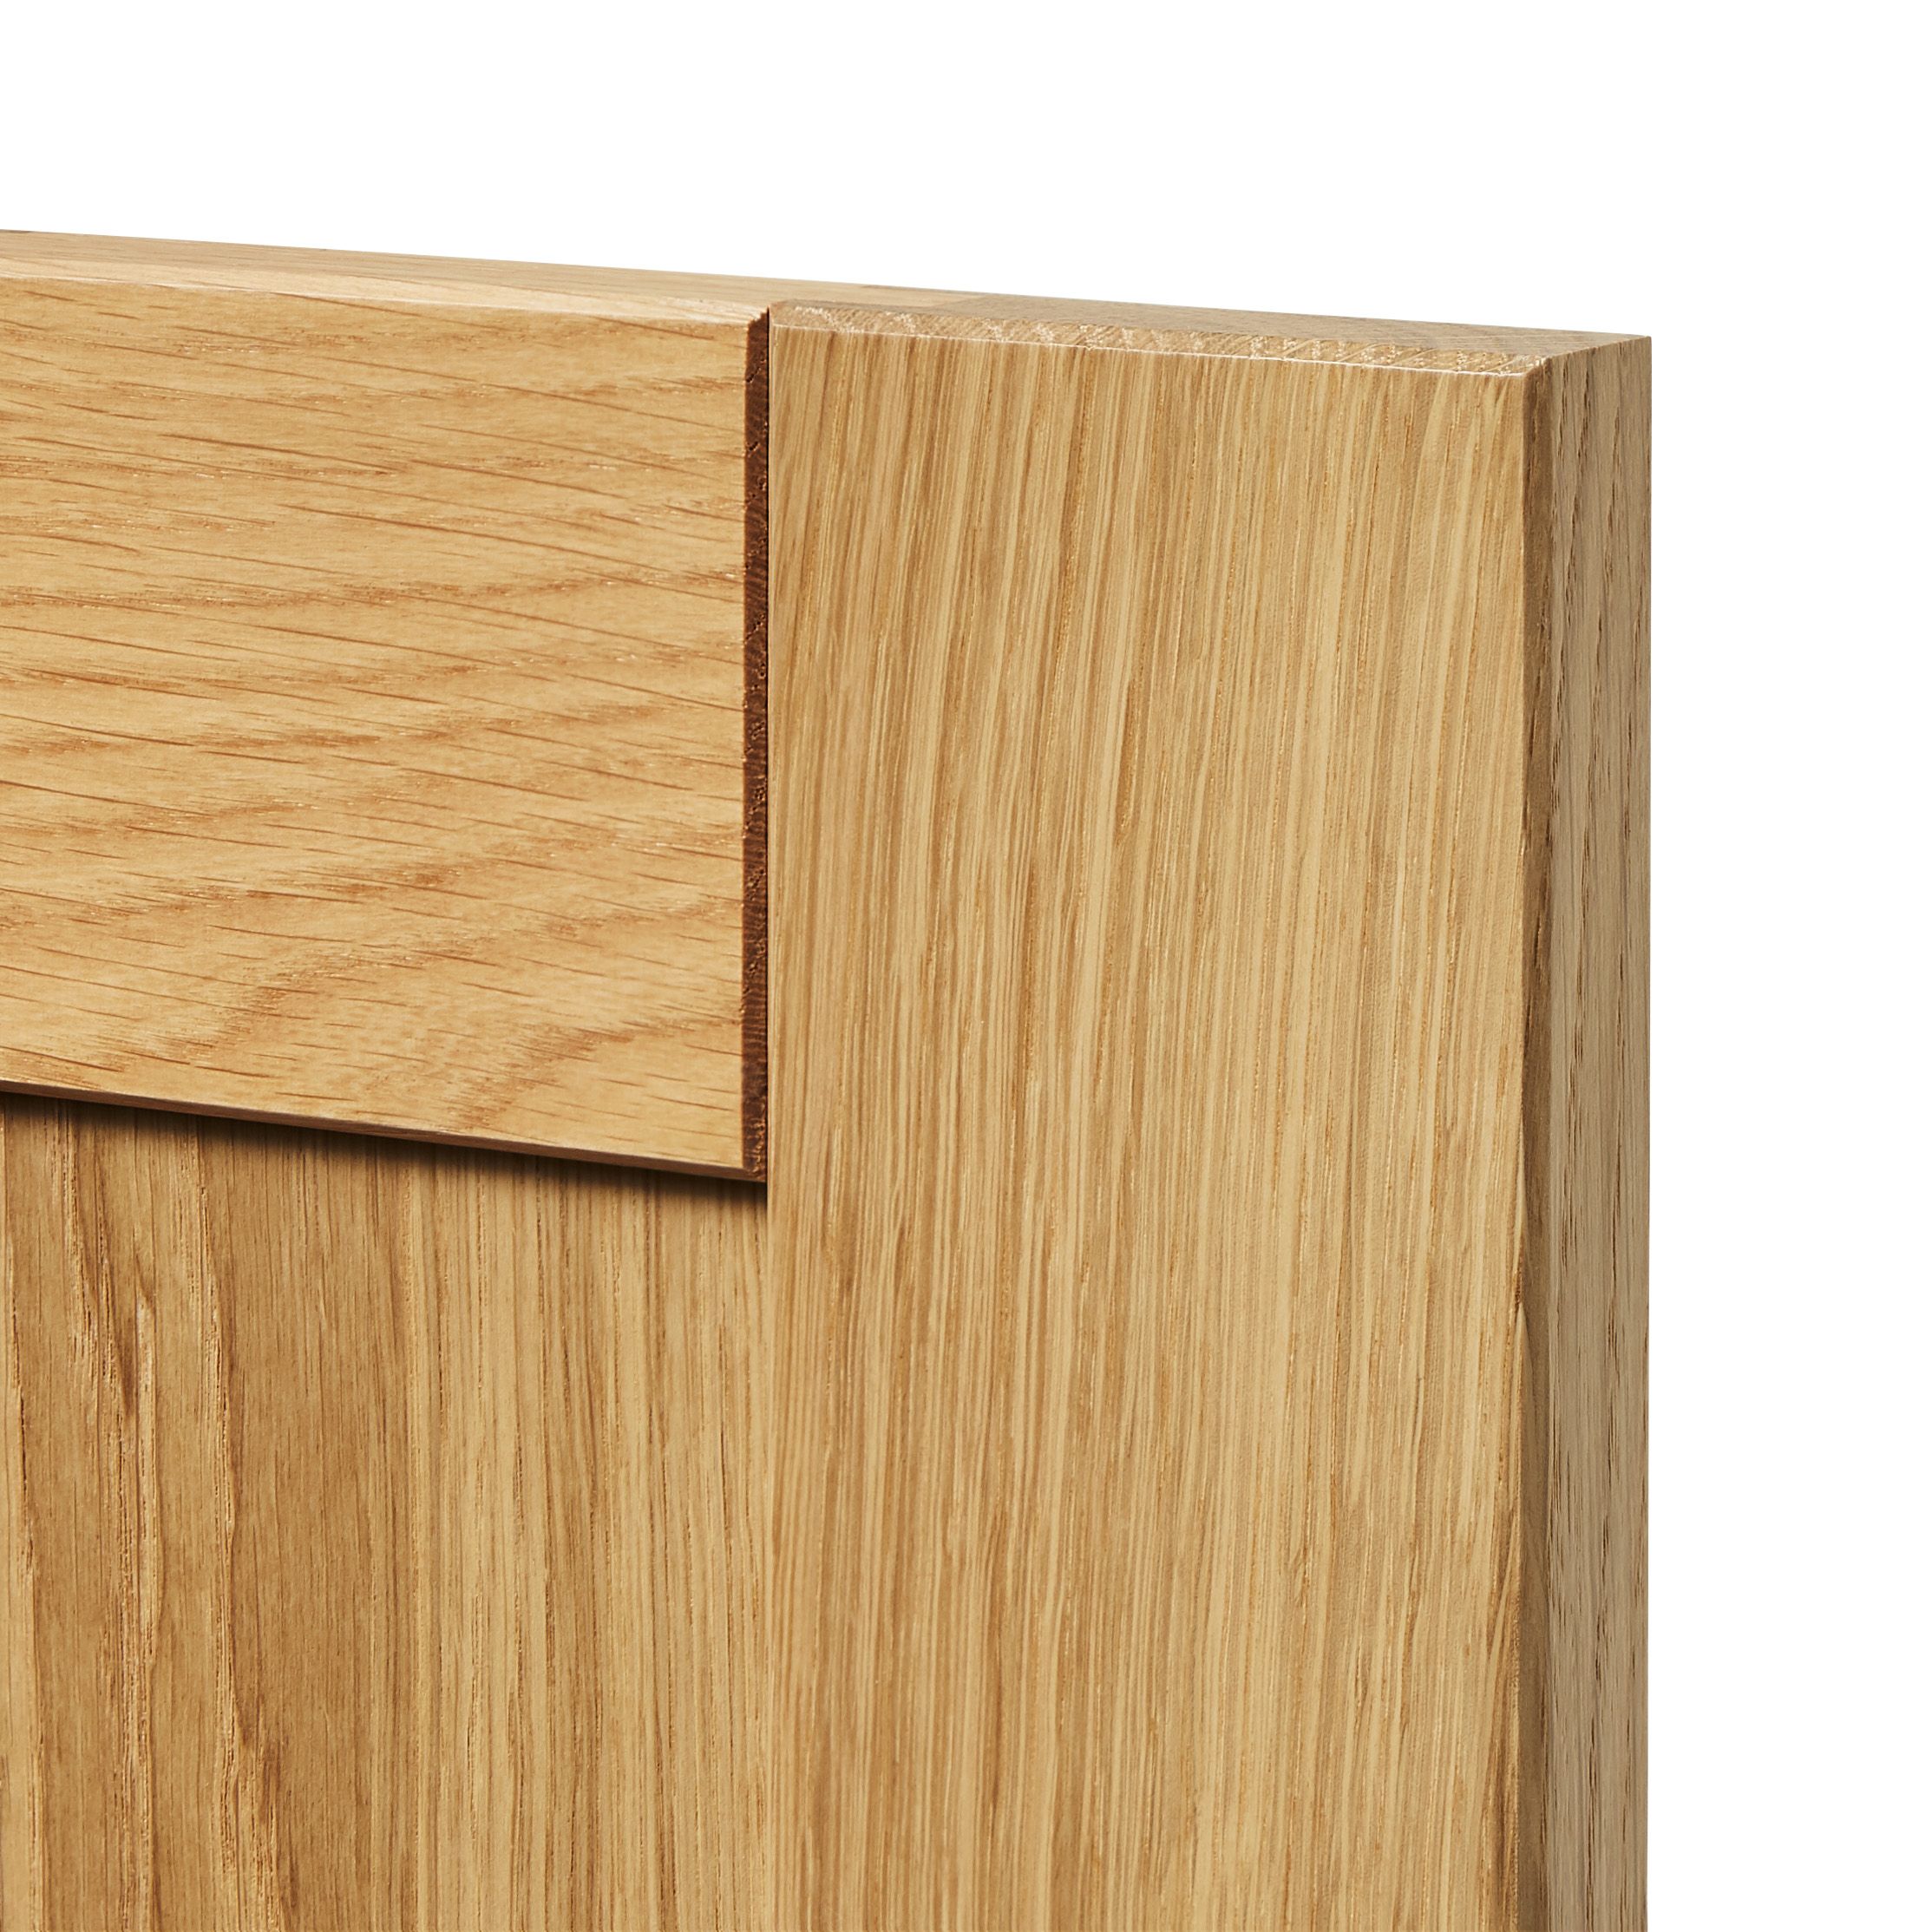 GoodHome Verbena Matt natural oak effect Drawer front, bridging door & bi fold door, (W)1000mm (H)356mm (T)20mm